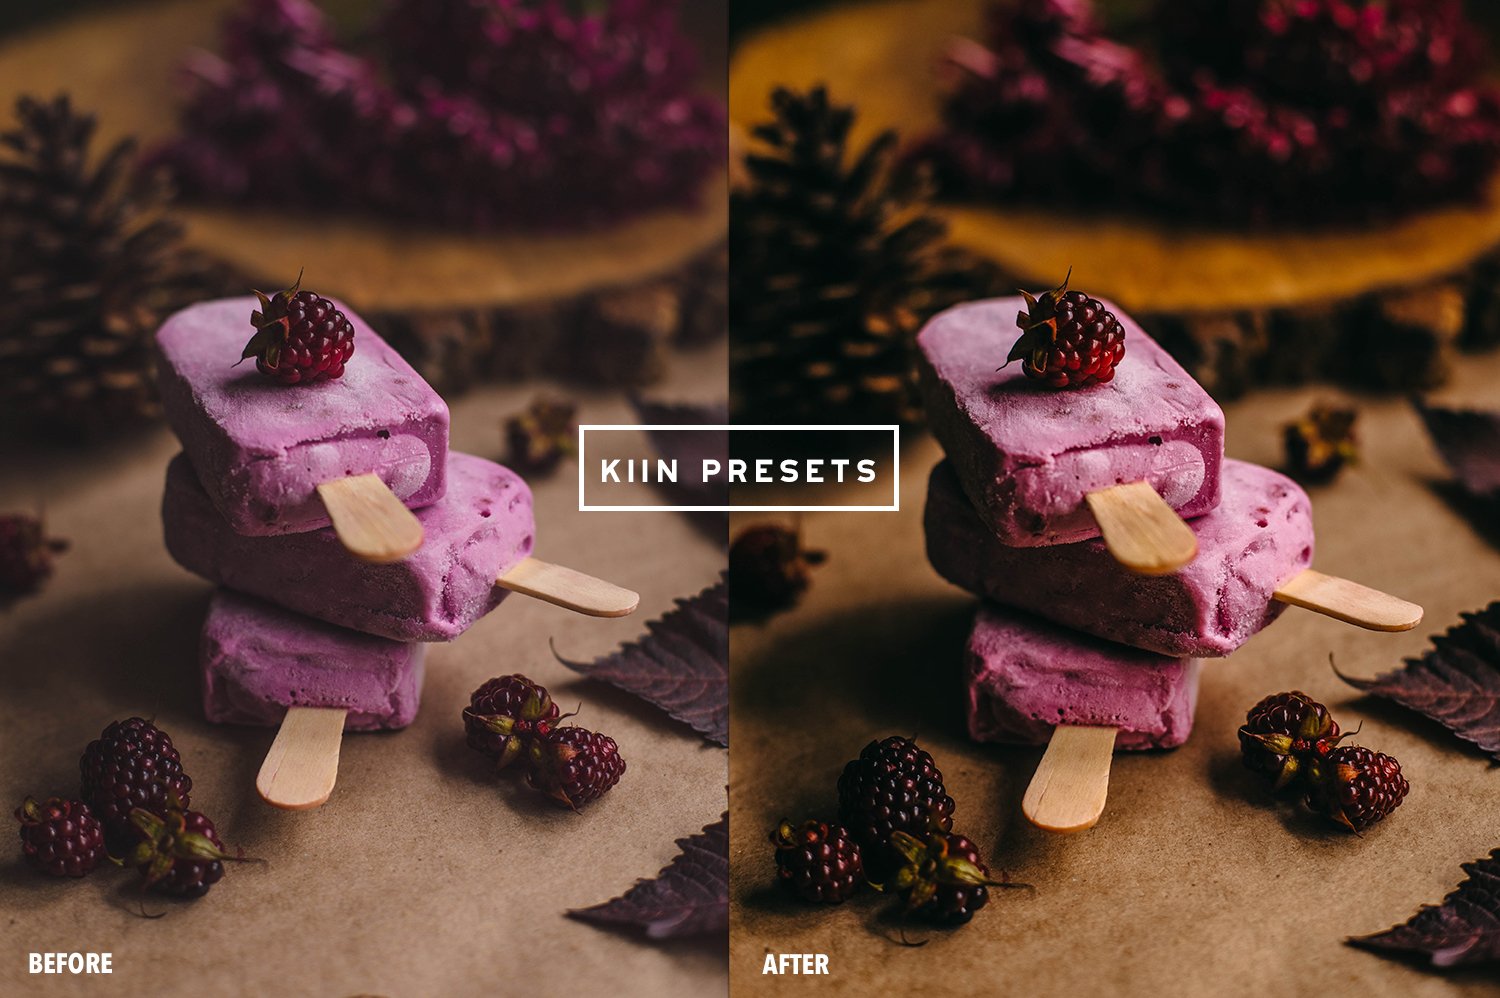 07kiin presetslightroom presetsmobile presets food presets tasty presets food photography preset food filter presets airy presets bright presets. 387